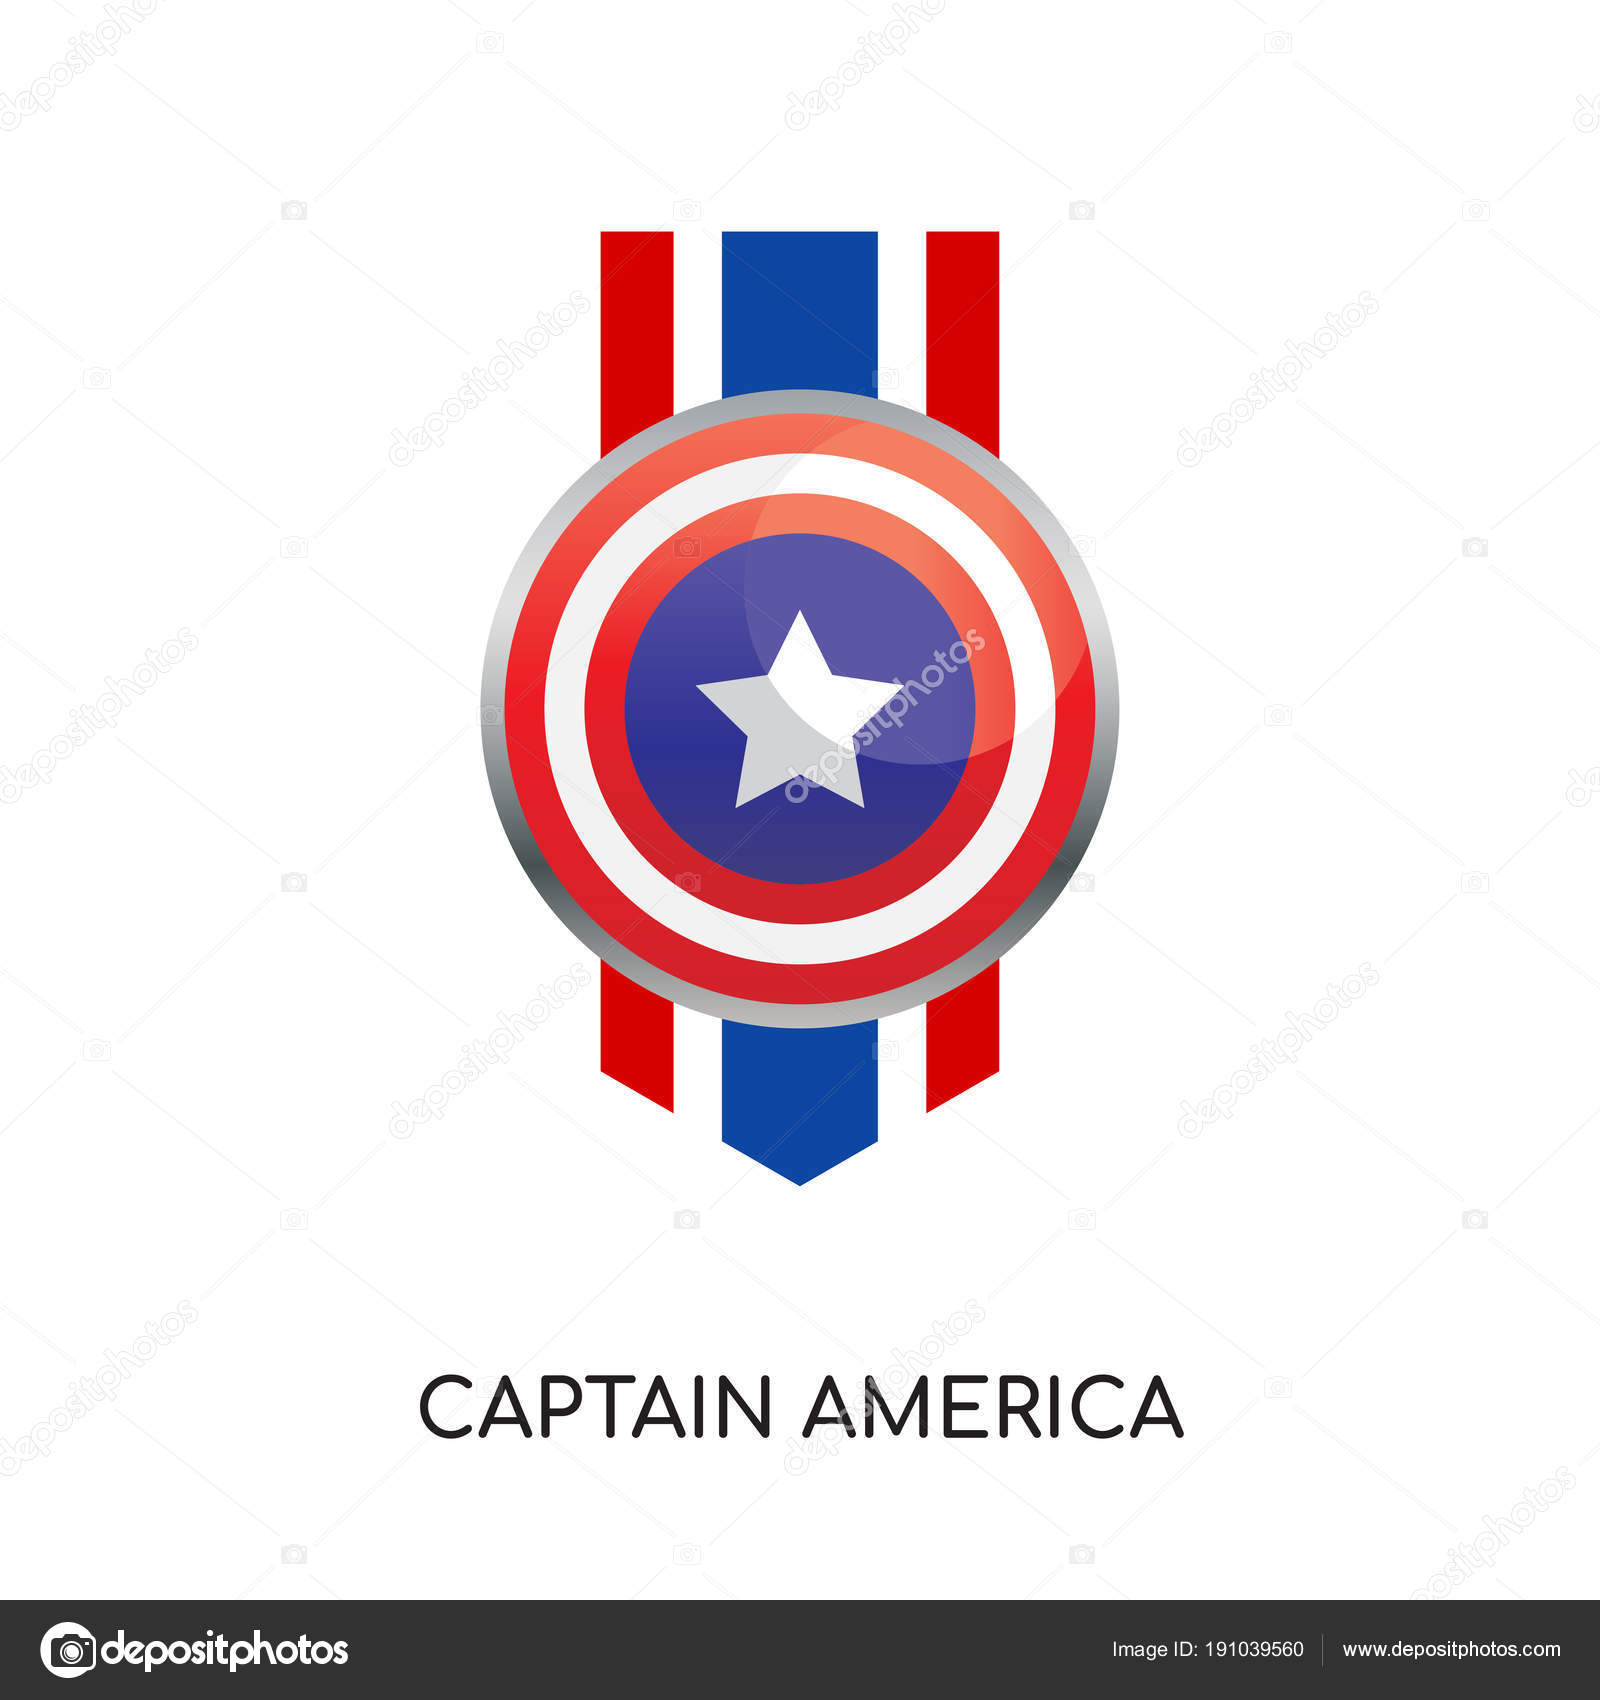 Etapa Hay una necesidad de Mucho bien bueno Captain america logo imágenes de stock de arte vectorial | Depositphotos